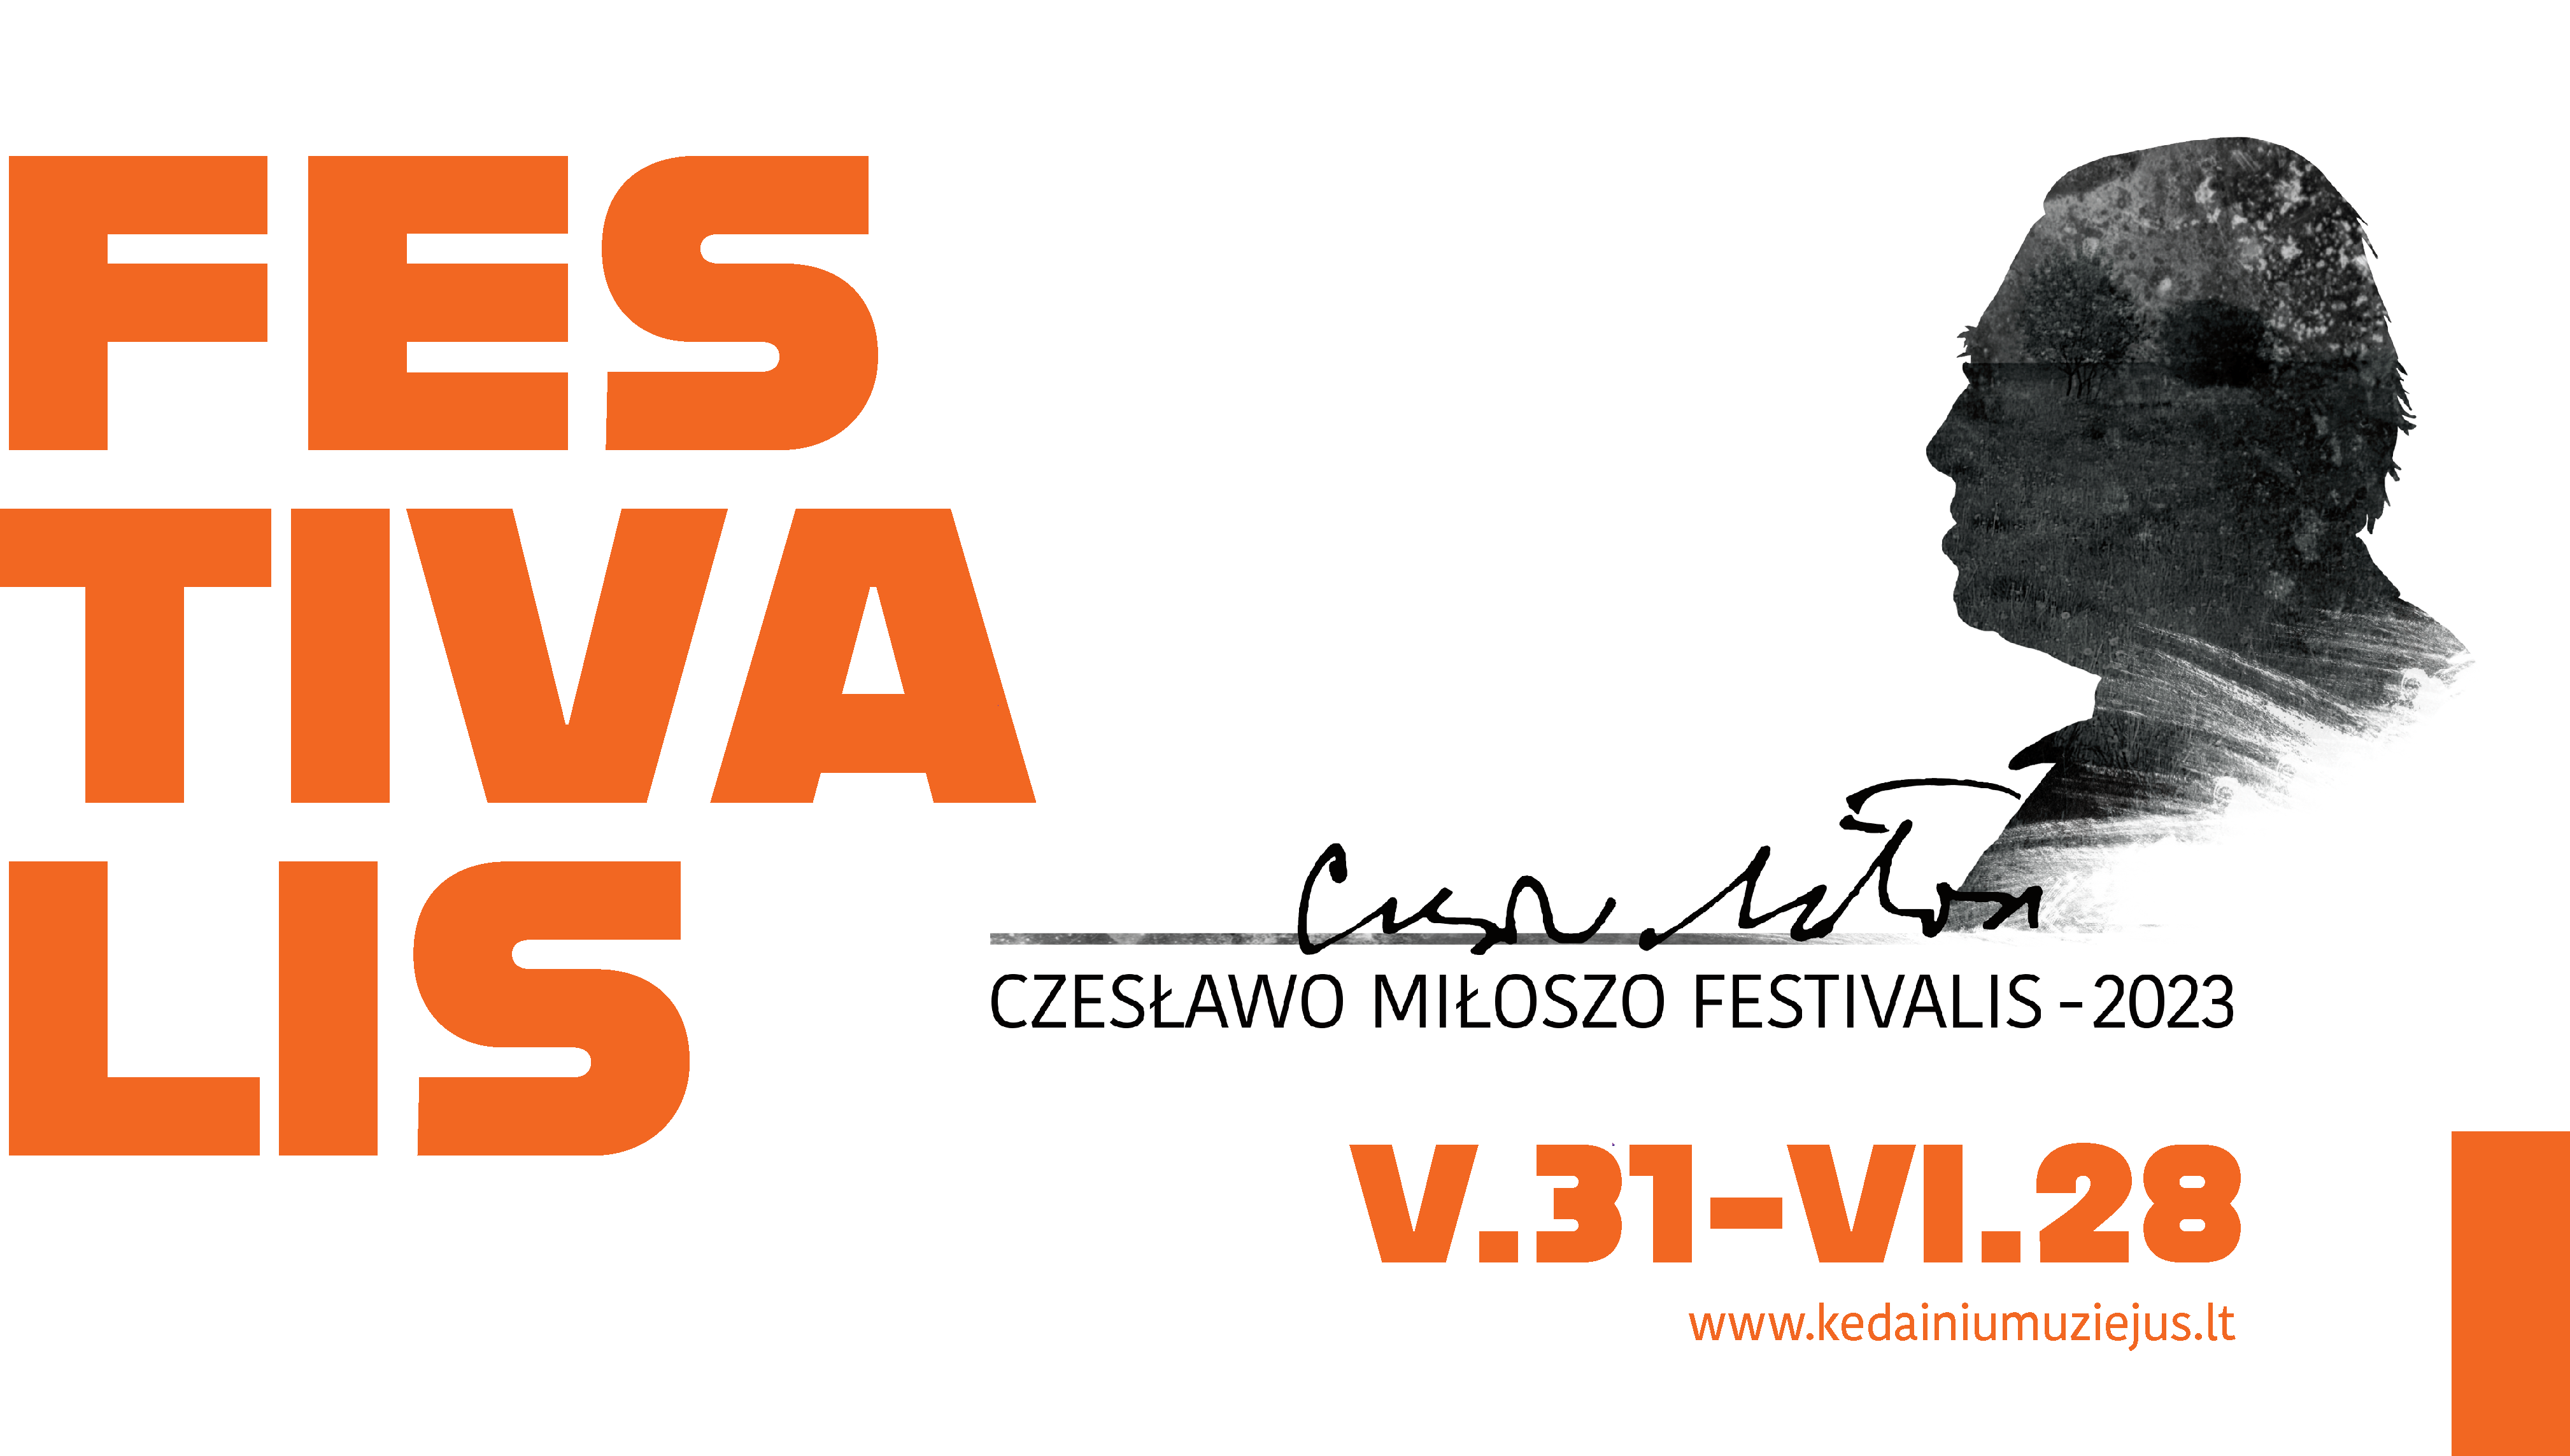 Czeslawo Miloszo festivalis 2023